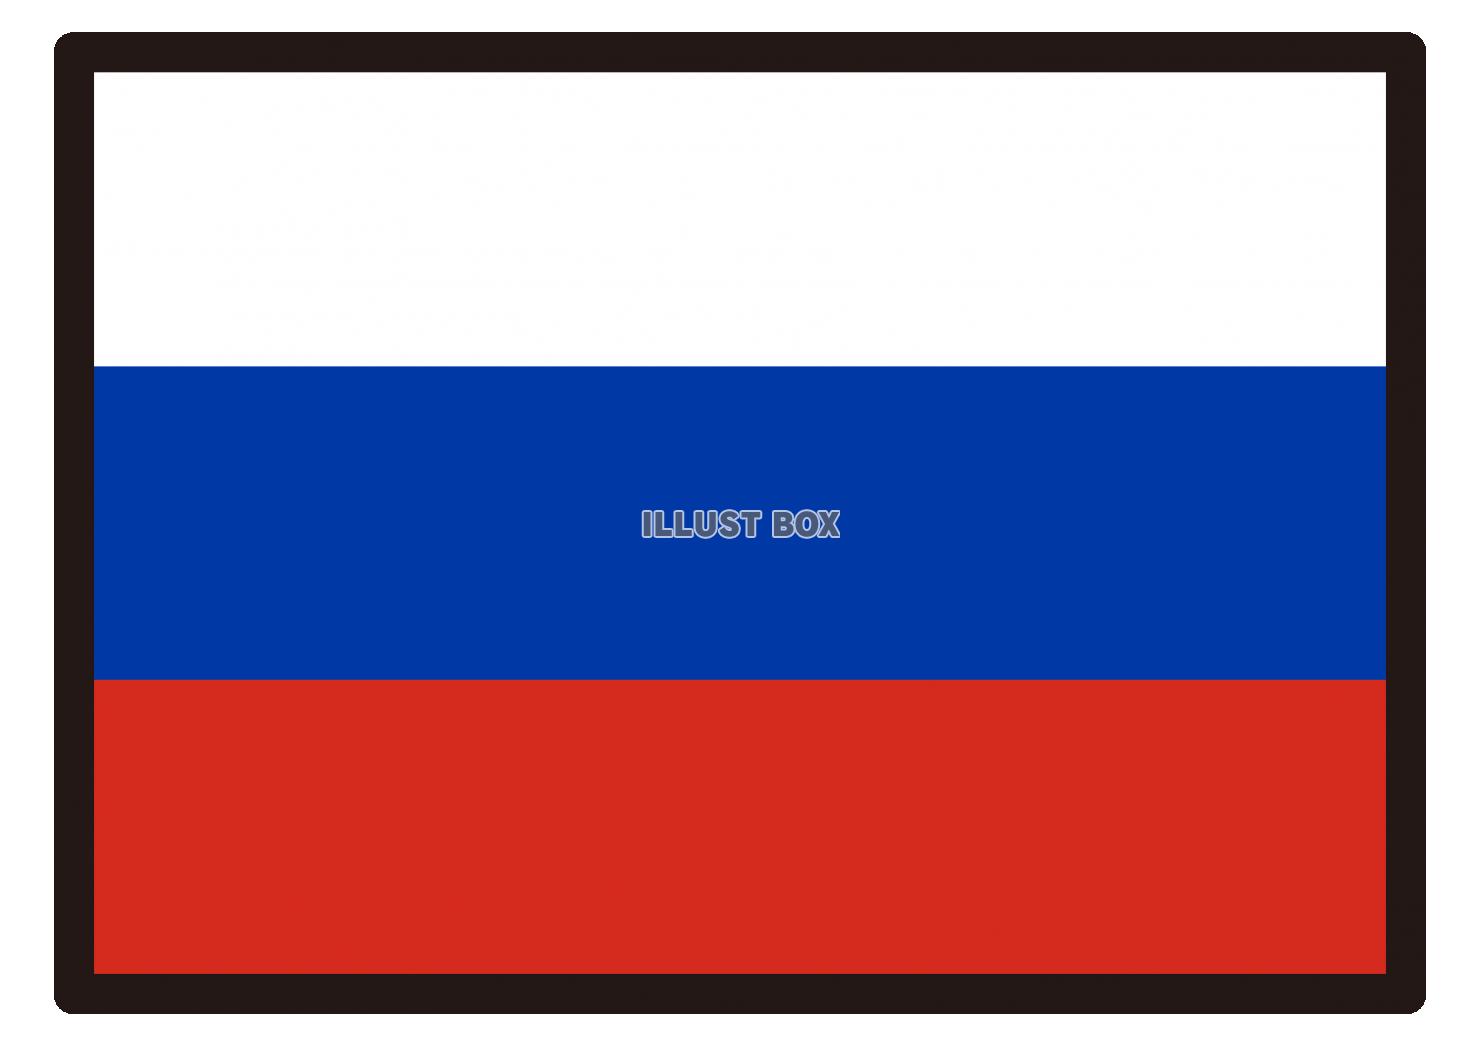 1_イラスト_ ロシア国旗・黒枠